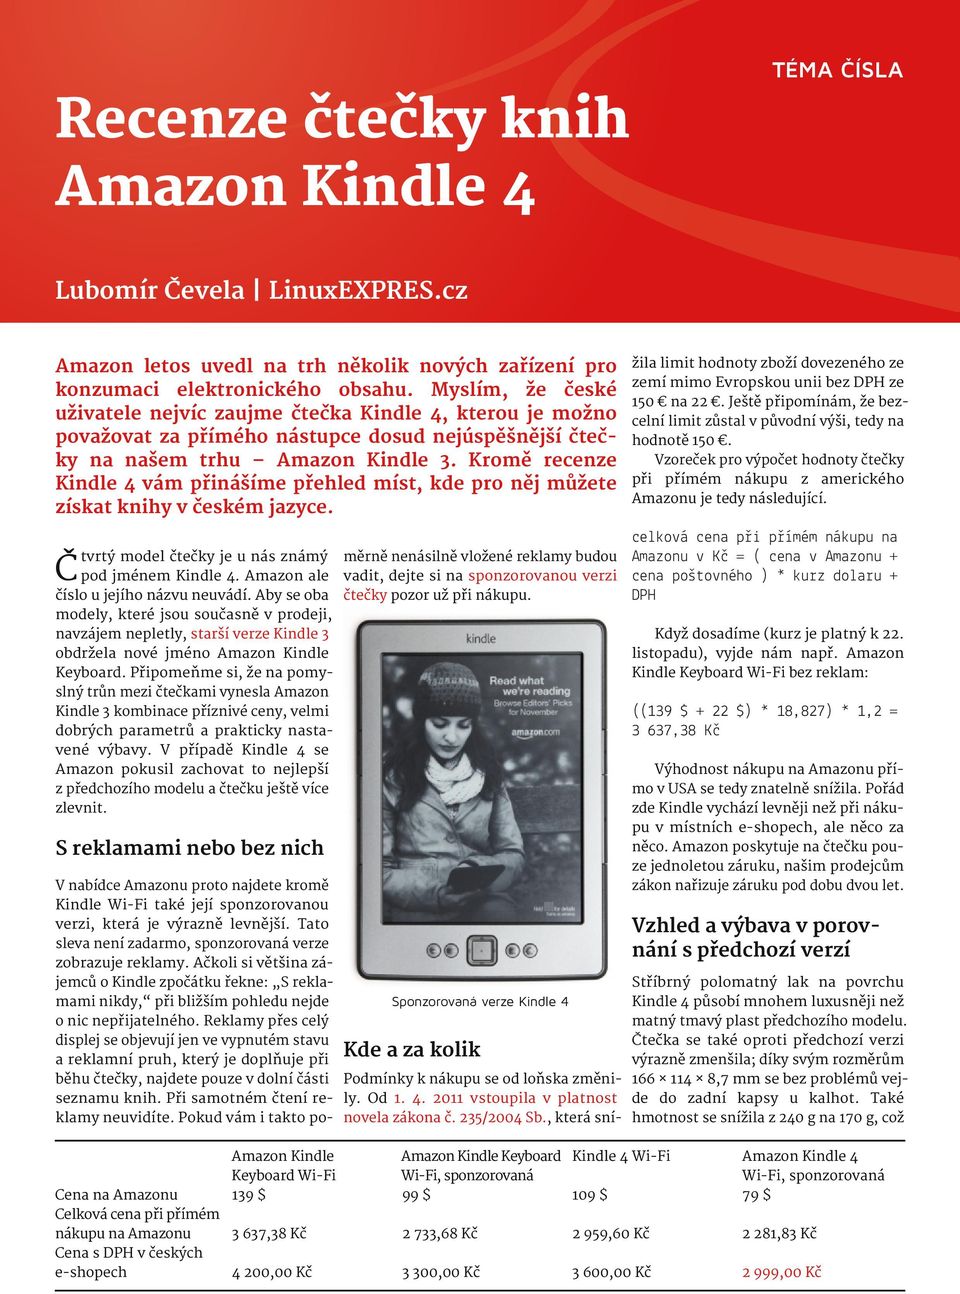 Kromě recenze Kindle 4 vám přinášíme přehled míst, kde pro něj můžete získat knihy v českém jazyce. žila limit hodnoty zboží dovezeného ze zemí mimo Evropskou unii bez DPH ze 150 na 22.